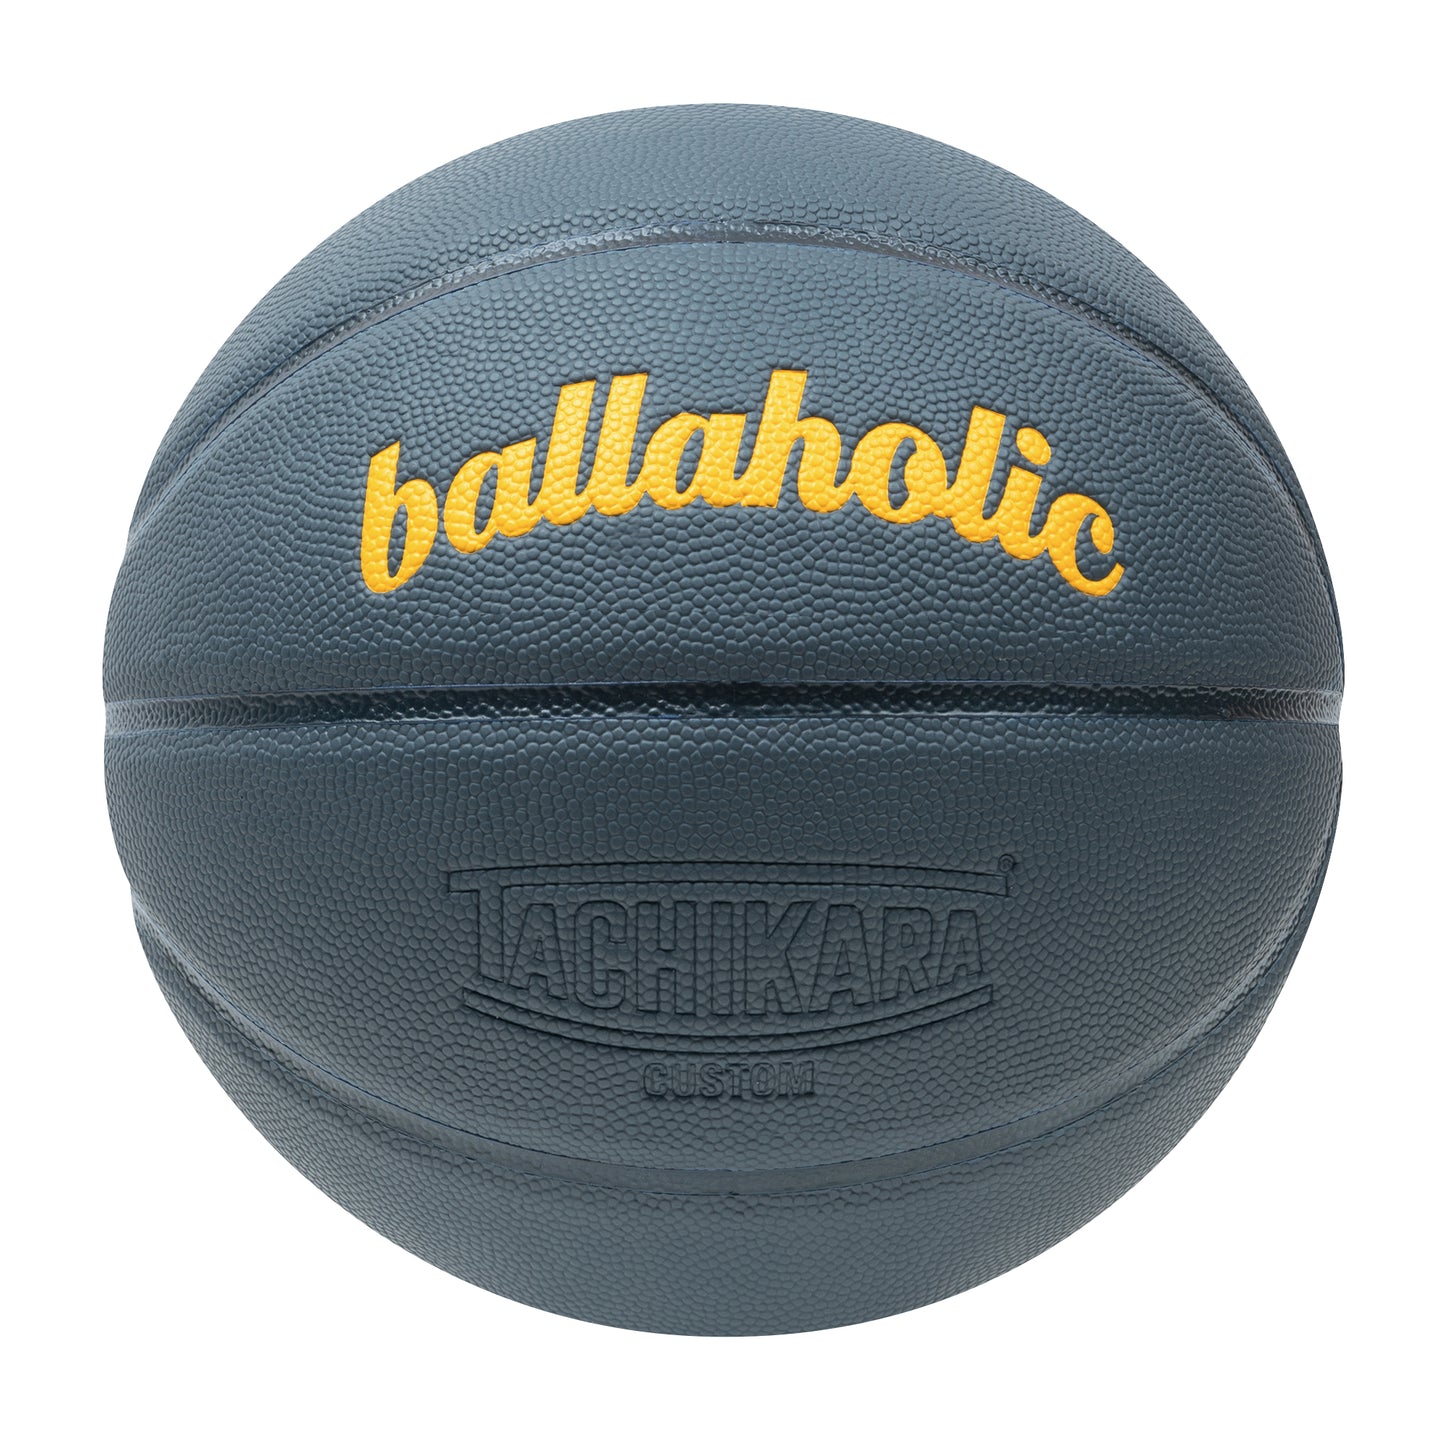 Playground Basketball / ballaholic x TACHIKARA (slate blue/dark navy/yellow)